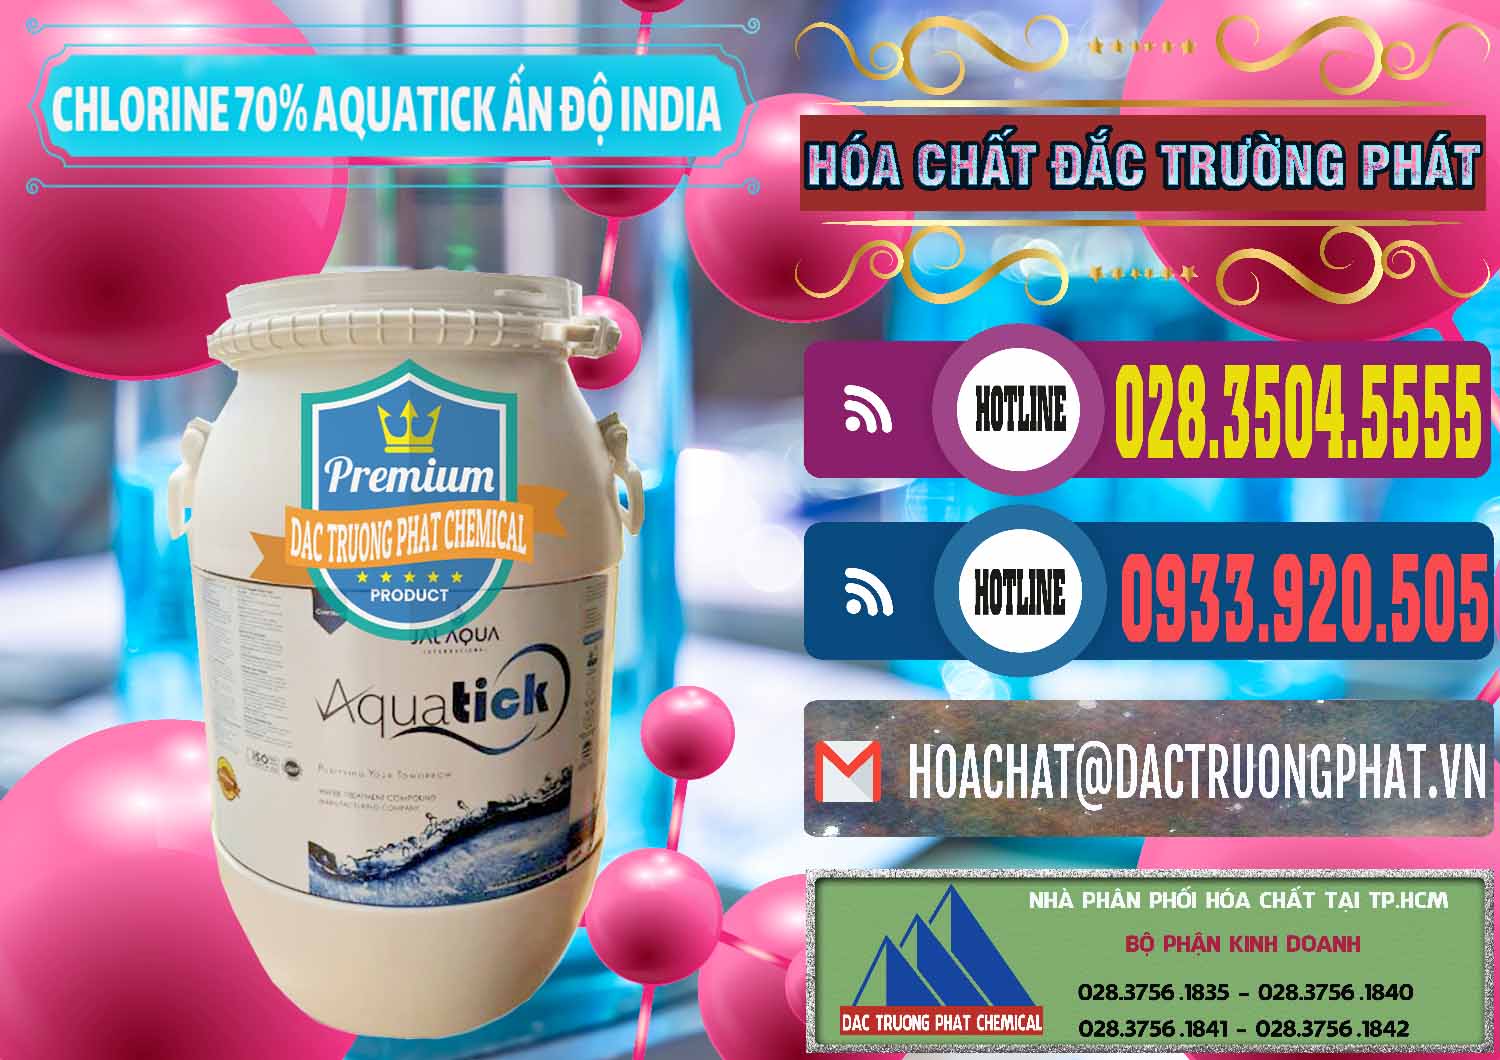 Nơi nhập khẩu ( bán ) Chlorine – Clorin 70% Aquatick Jal Aqua Ấn Độ India - 0215 - Công ty cung cấp và nhập khẩu hóa chất tại TP.HCM - muabanhoachat.com.vn